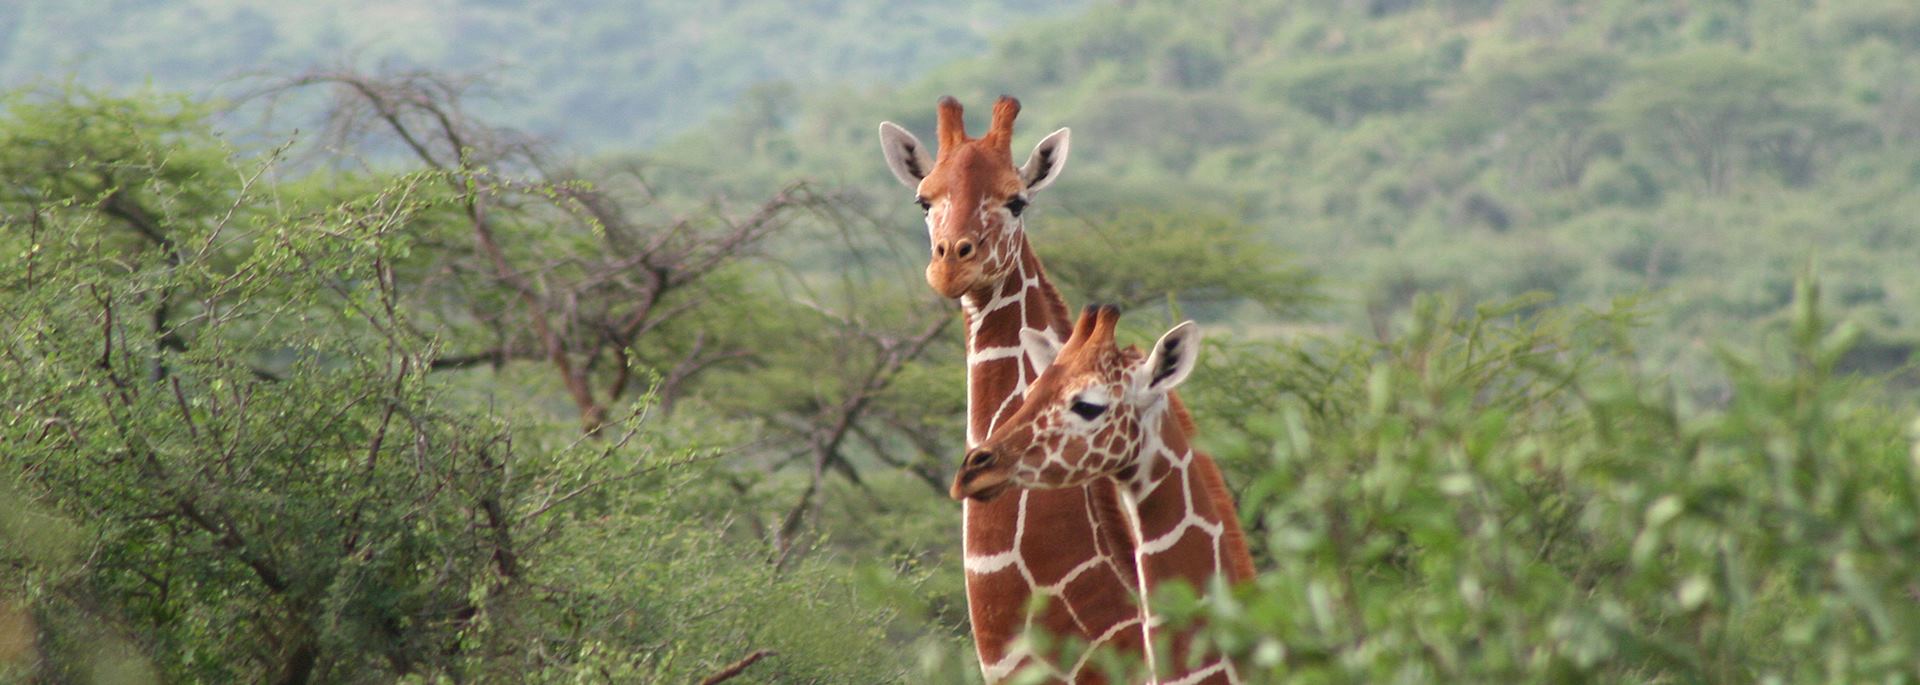 Giraffe at Il Ngwesi Group Ranch